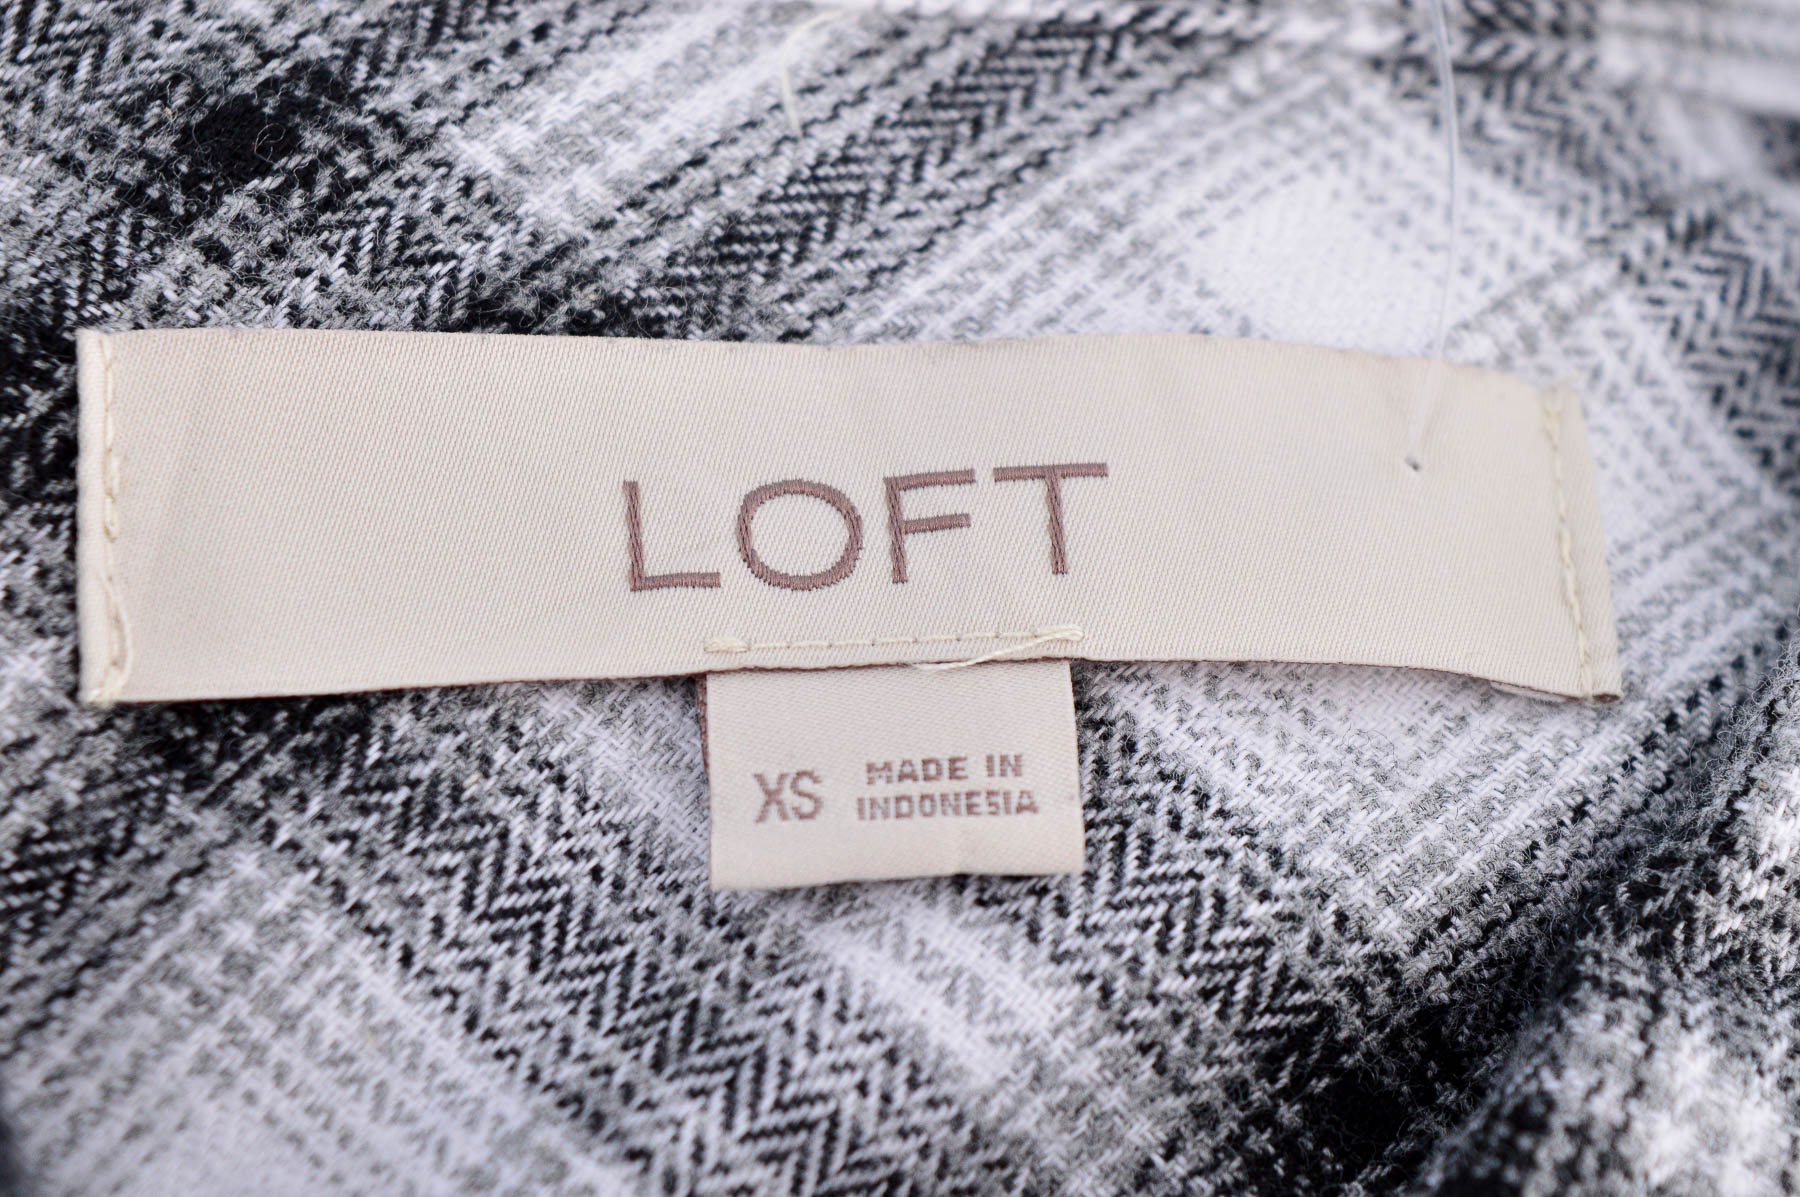 Women's shirt - LOFT - 2